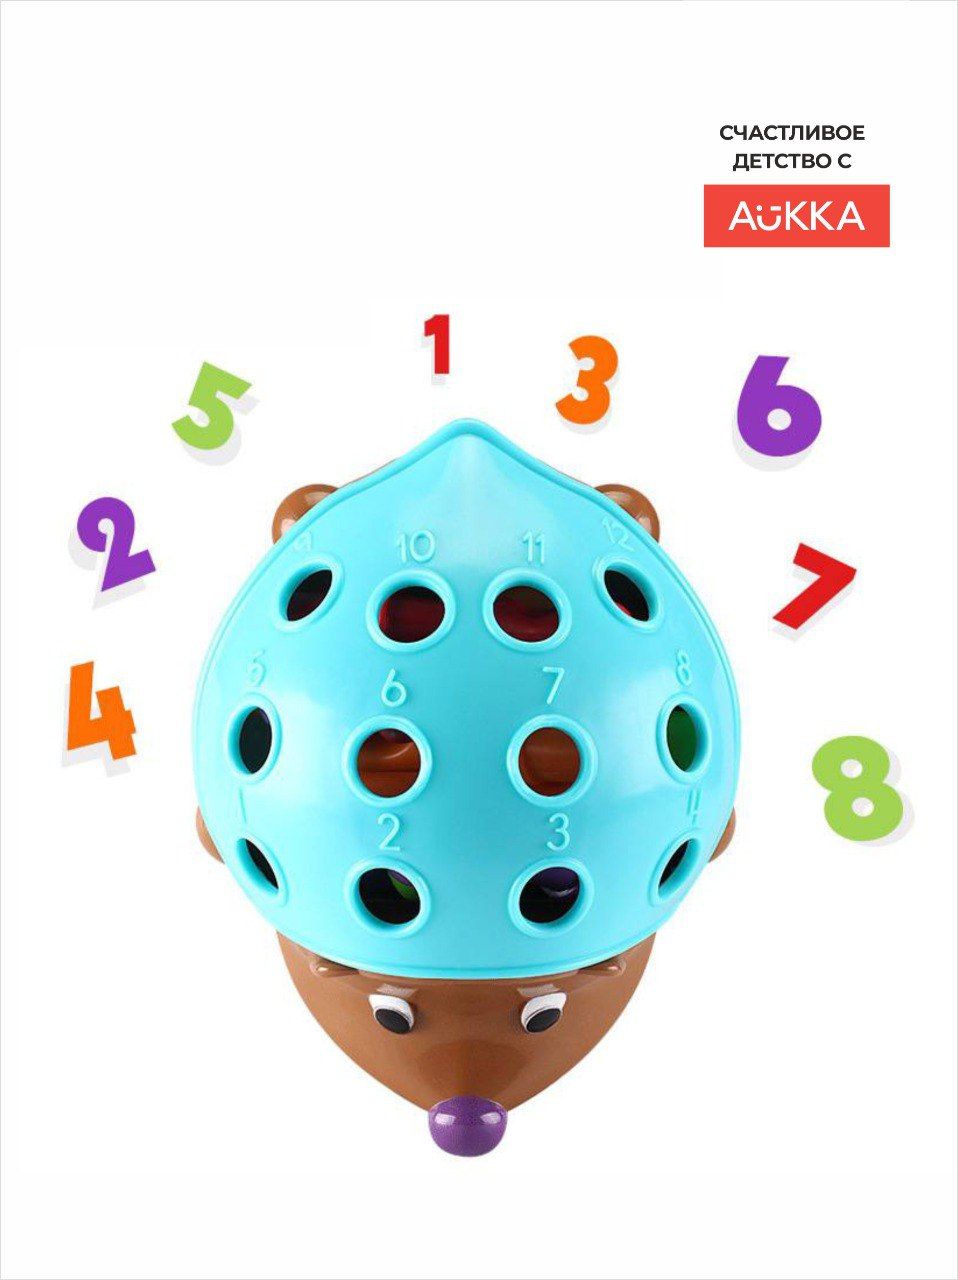 Развивающая детская игра AUKKA Ежик cортер по методике Монтессори для детей от 1 года - фото 4